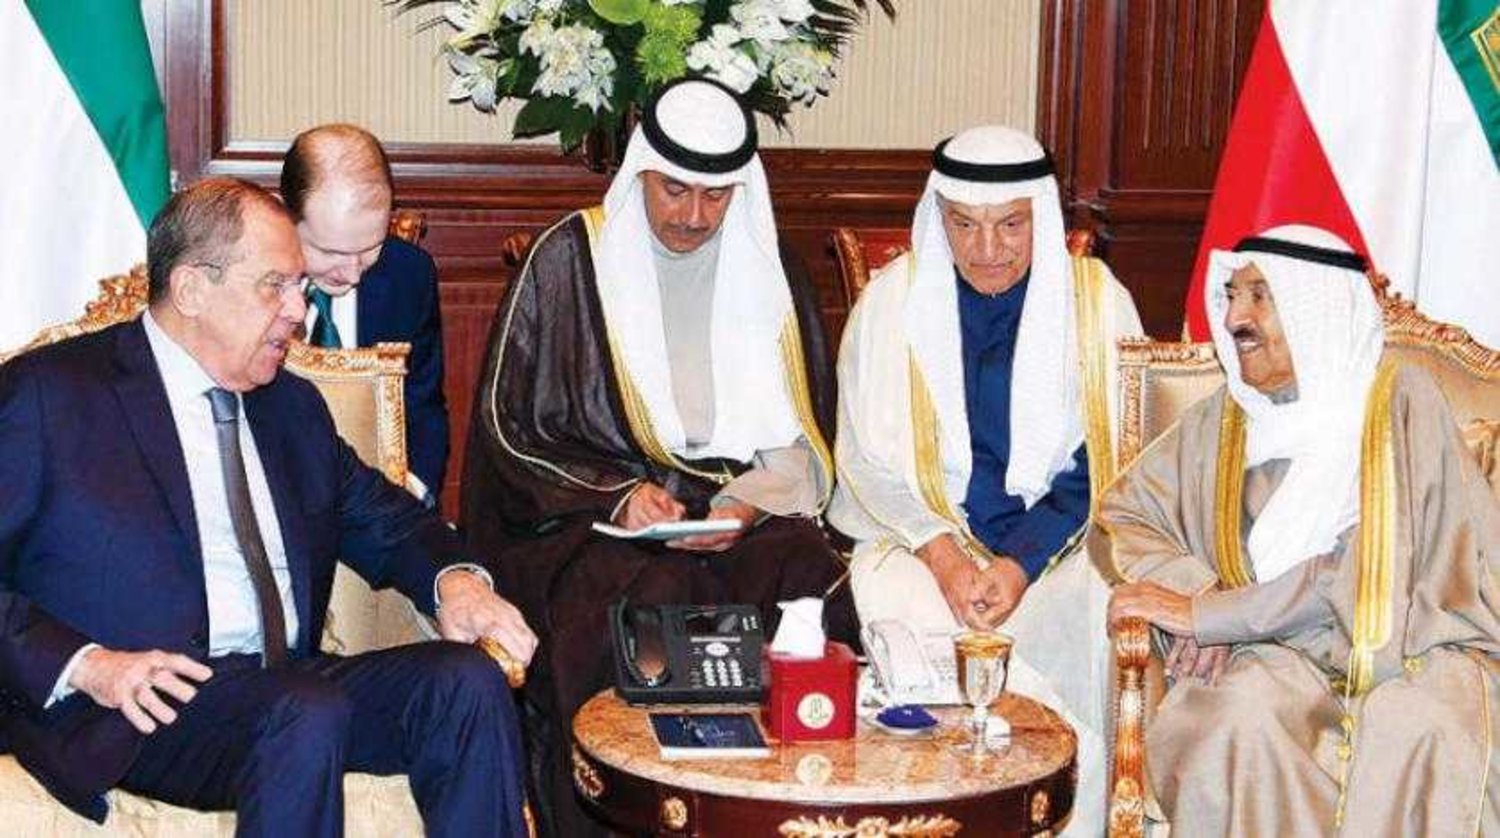 Emir Sheikh Sabah al-Ahmad al-Sabah with Sergei Lavrov on Wednesday, March 6, 2019 in Kuwait. (Asharq Al-Awsat)